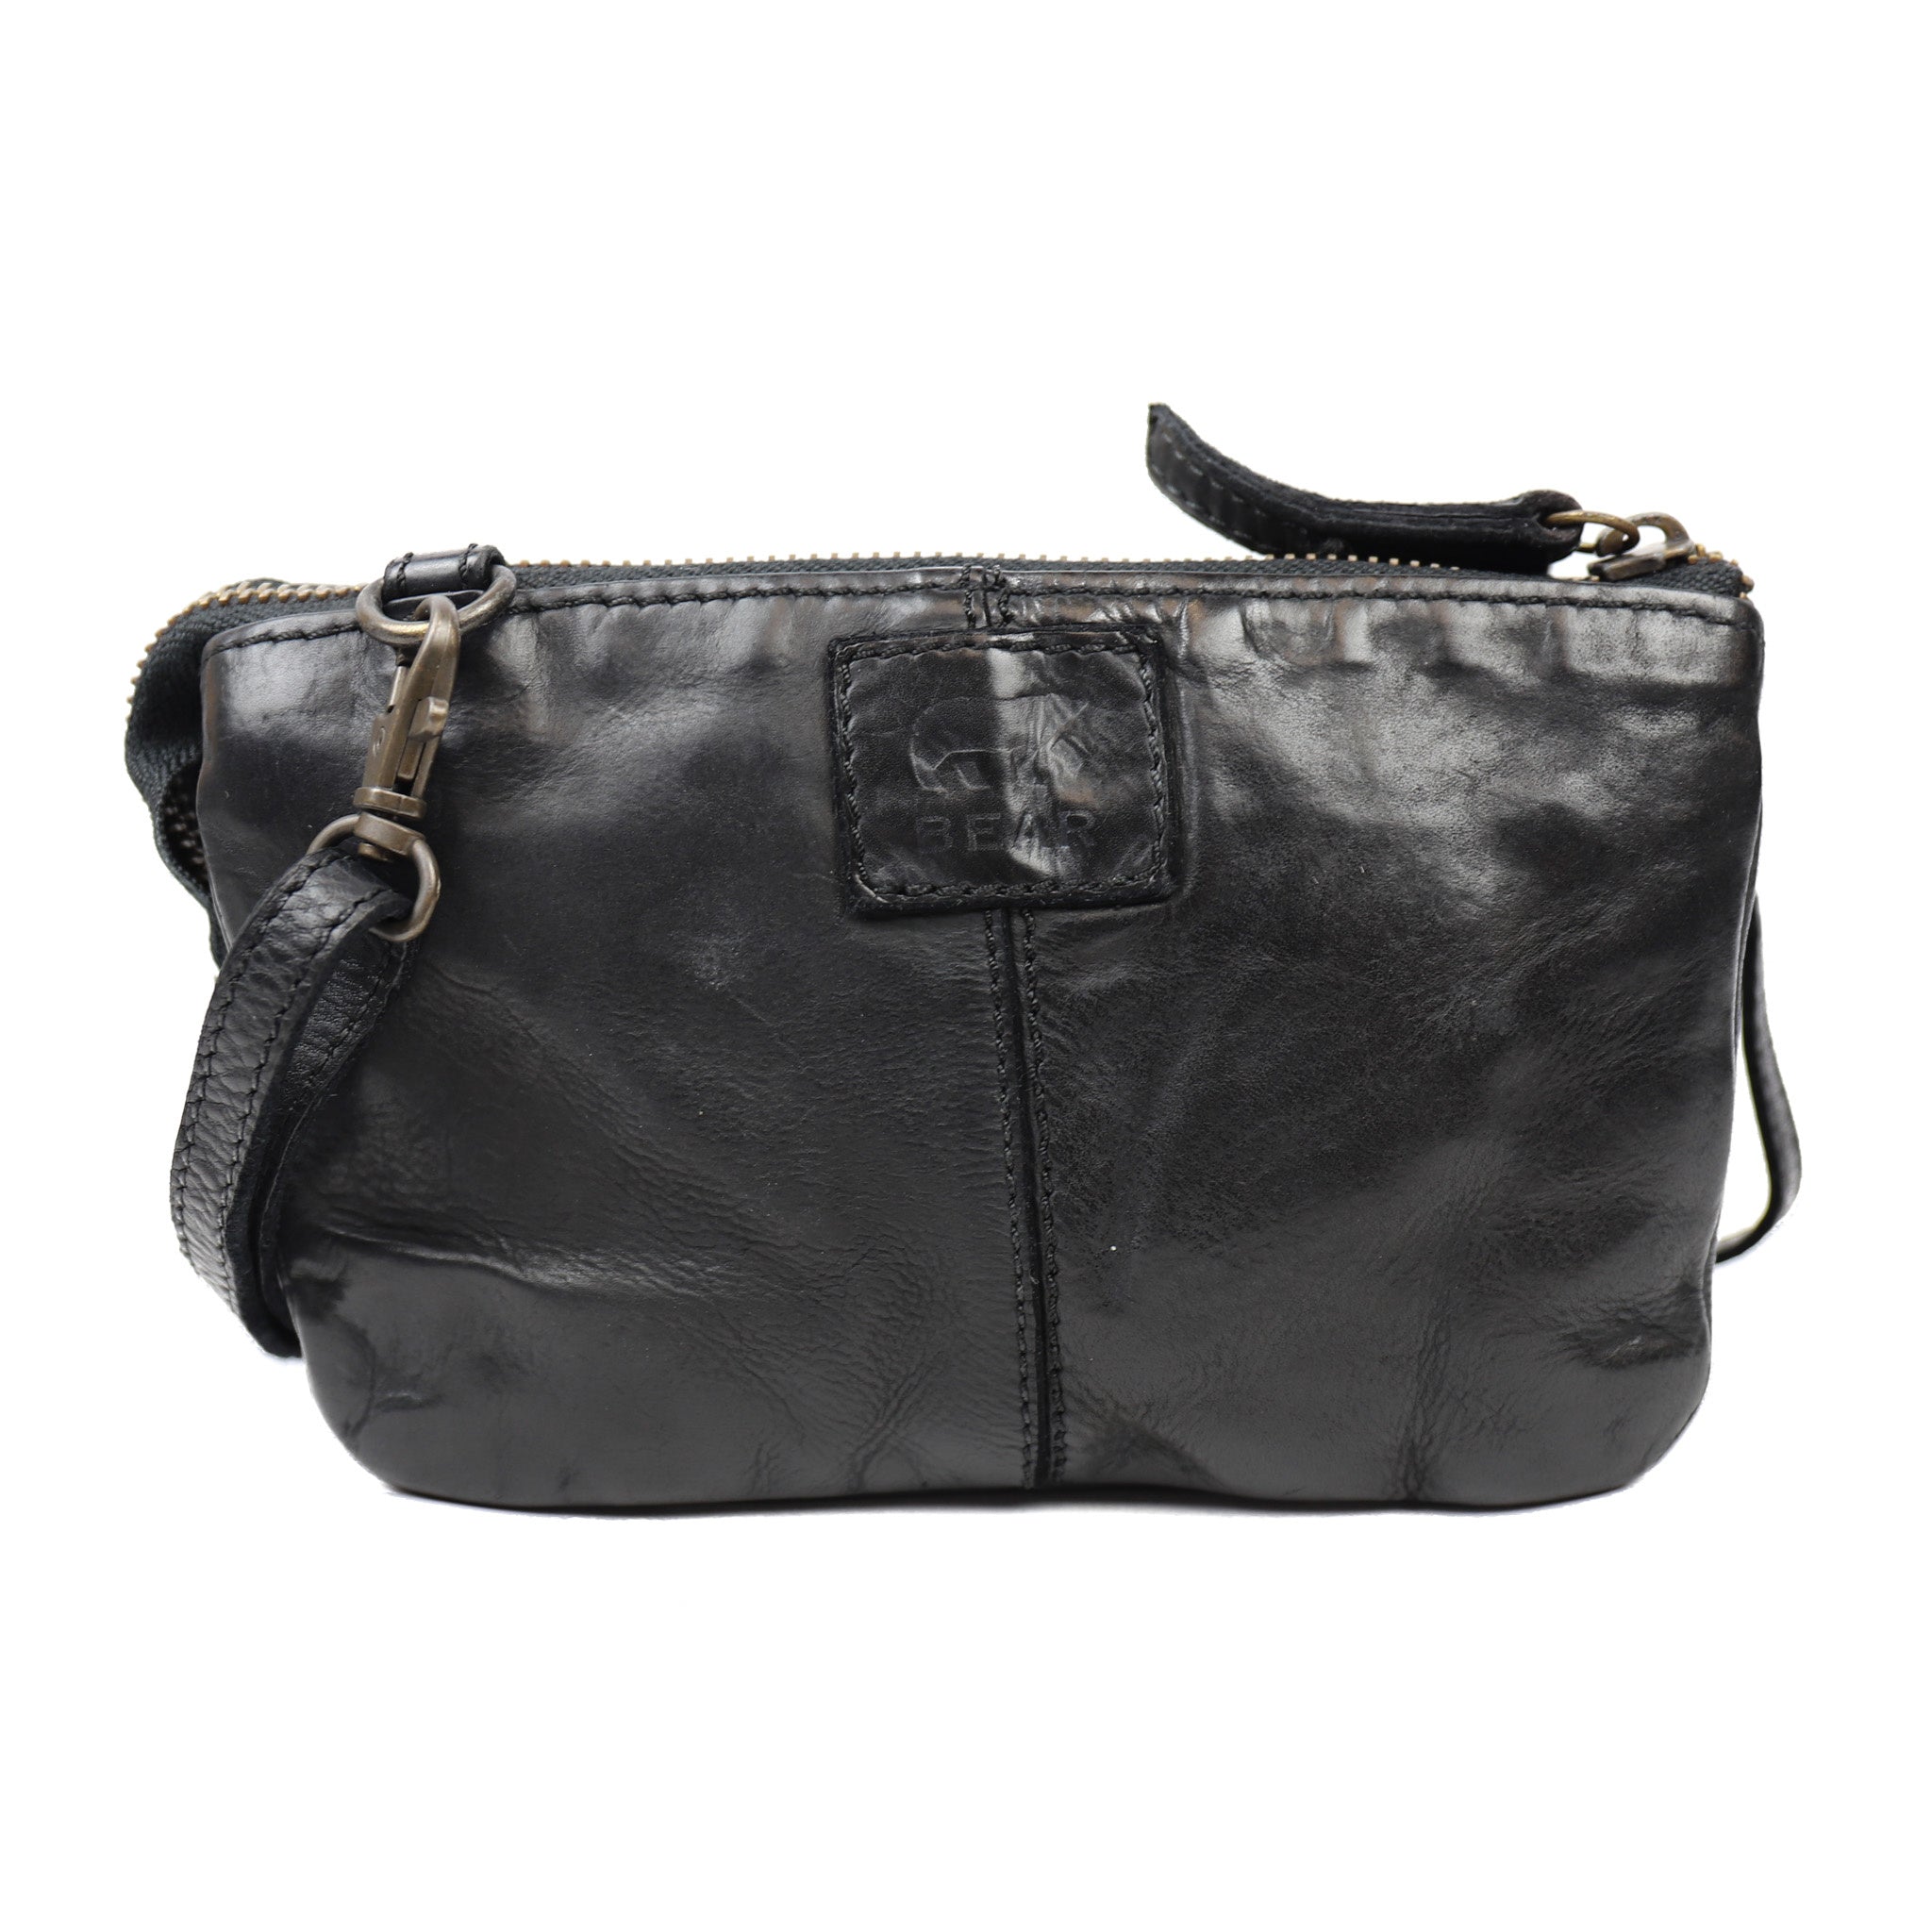 Purse bag 'Umi' black - CL 36799